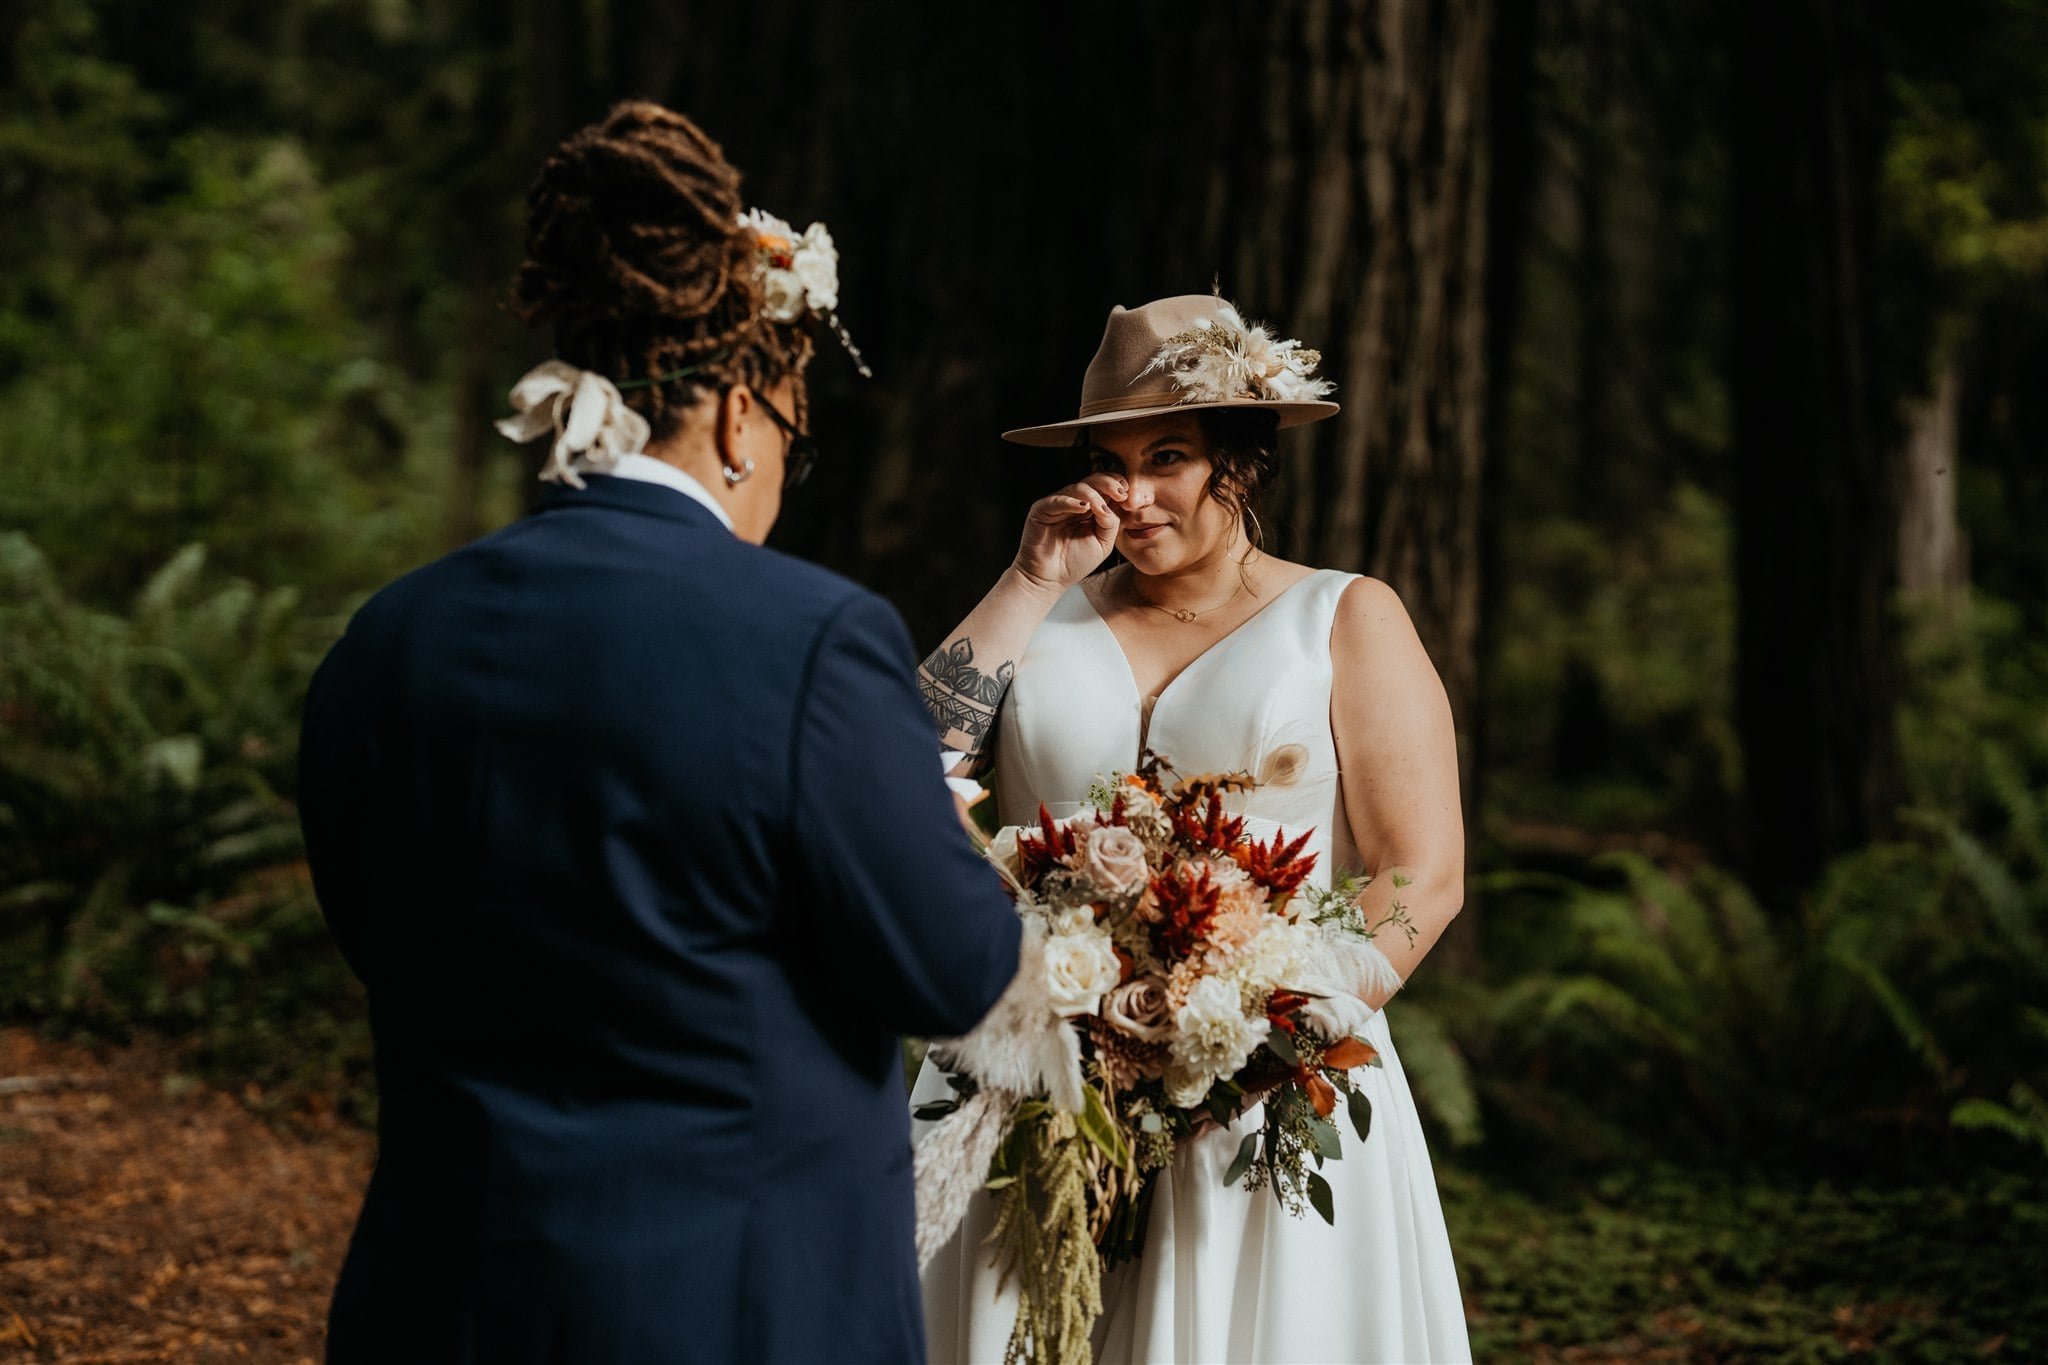 Brides get emotional during forest elopement ceremony in Oregon